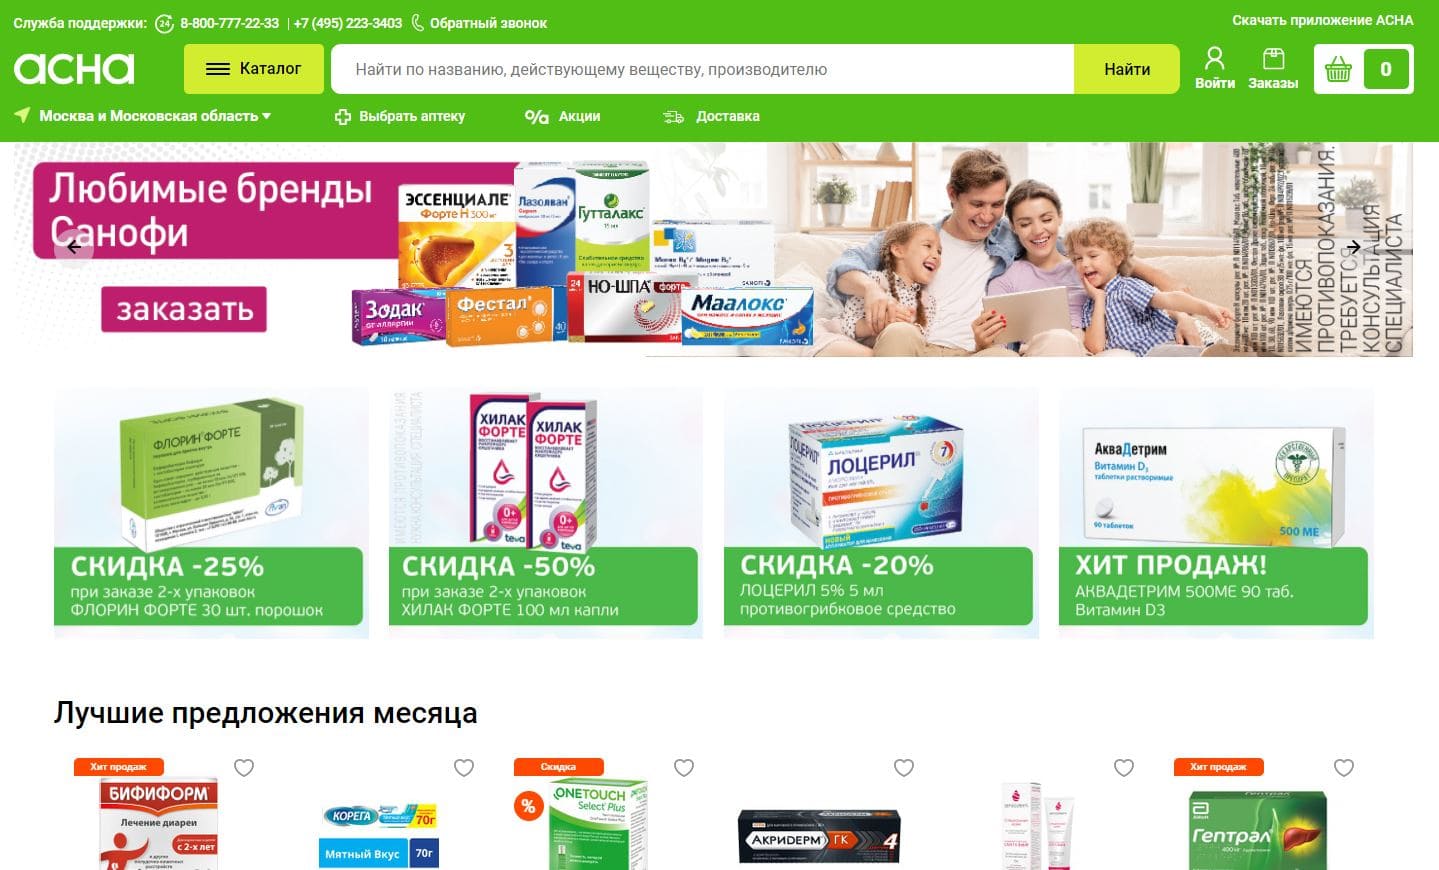 Аптека Ру Стерлитамак Заказать Лекарство Официальный Сайт